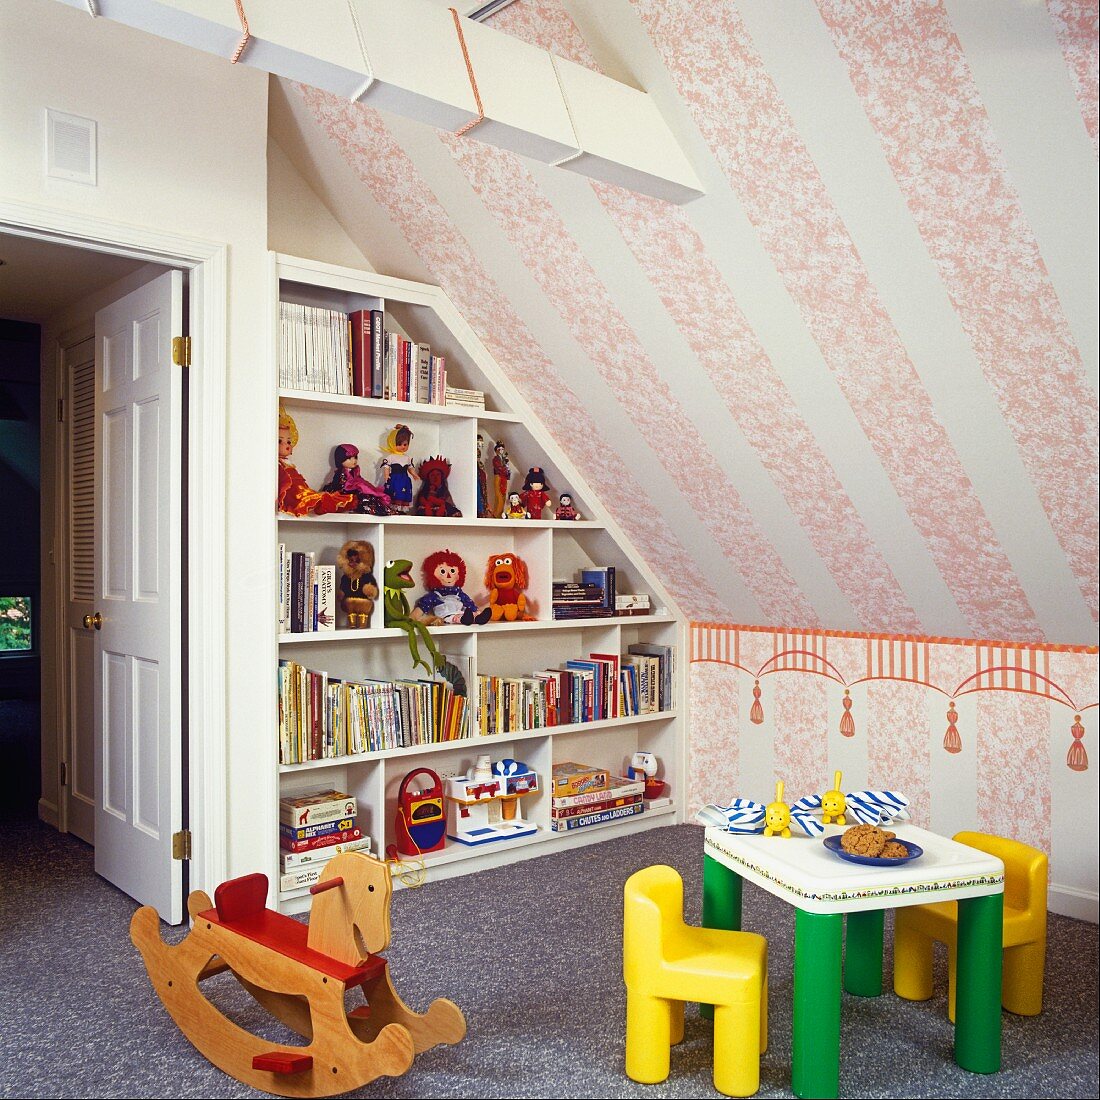 Kinderzimmerecke unter dem Dach mit Bücher- und Spielzeugregal, Kindermöbeln und einem hölzernen Schaukelpferd